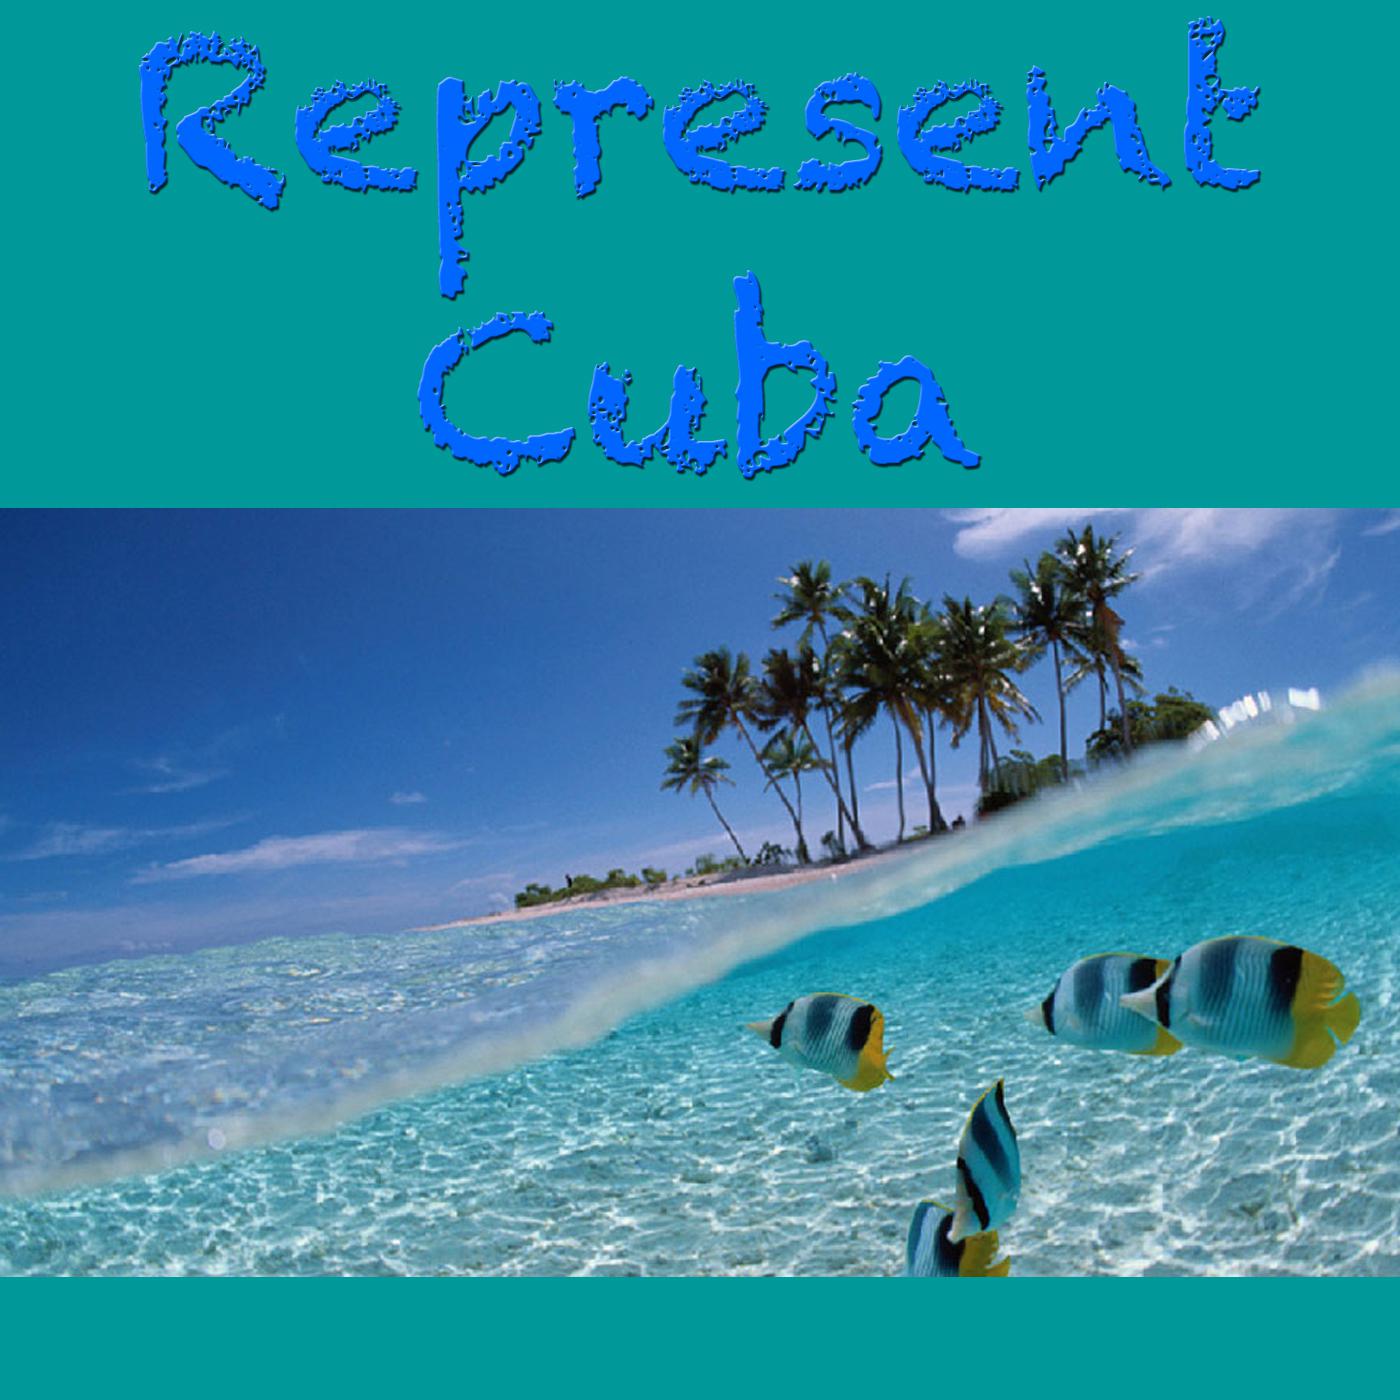 Represent Cuba